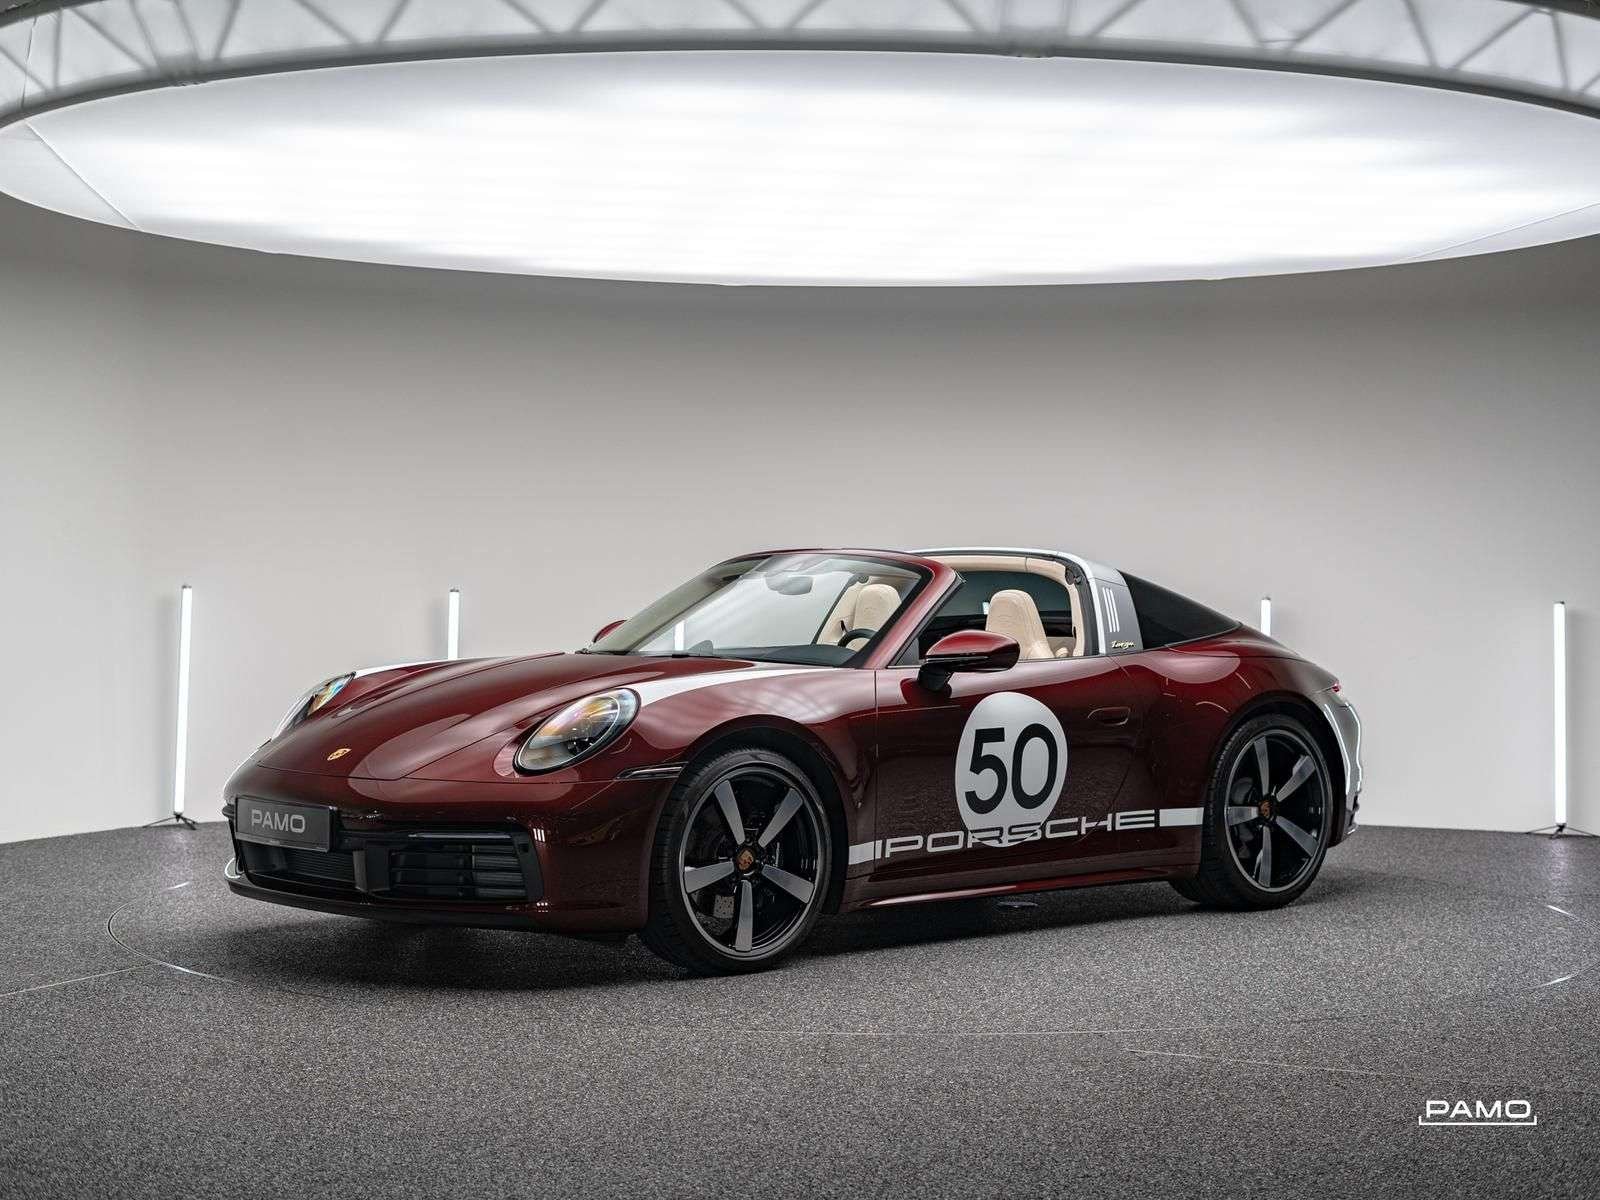 Porsche 992 Heritage Design Edition